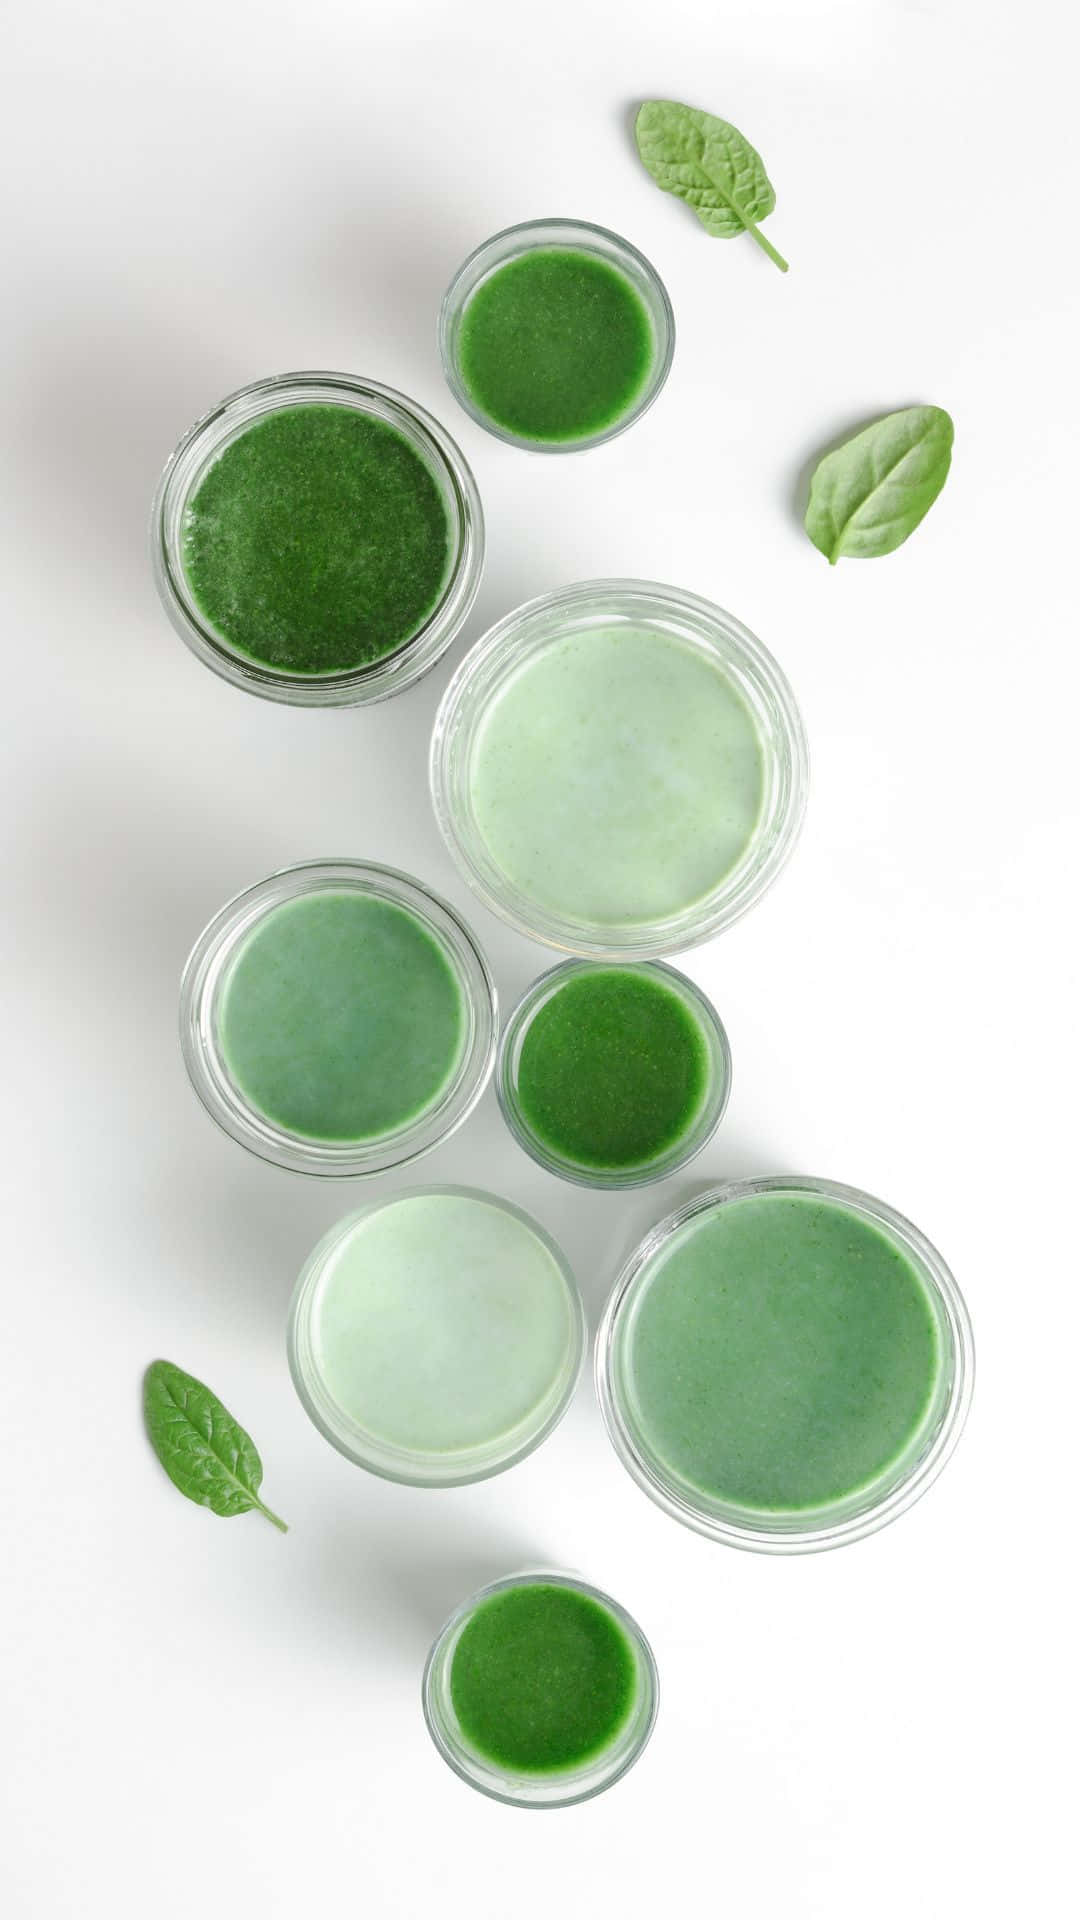 Passarbra Som Dator- Eller Mobilbakgrund: Matcha Green Tea Sage Aesthetic. Wallpaper